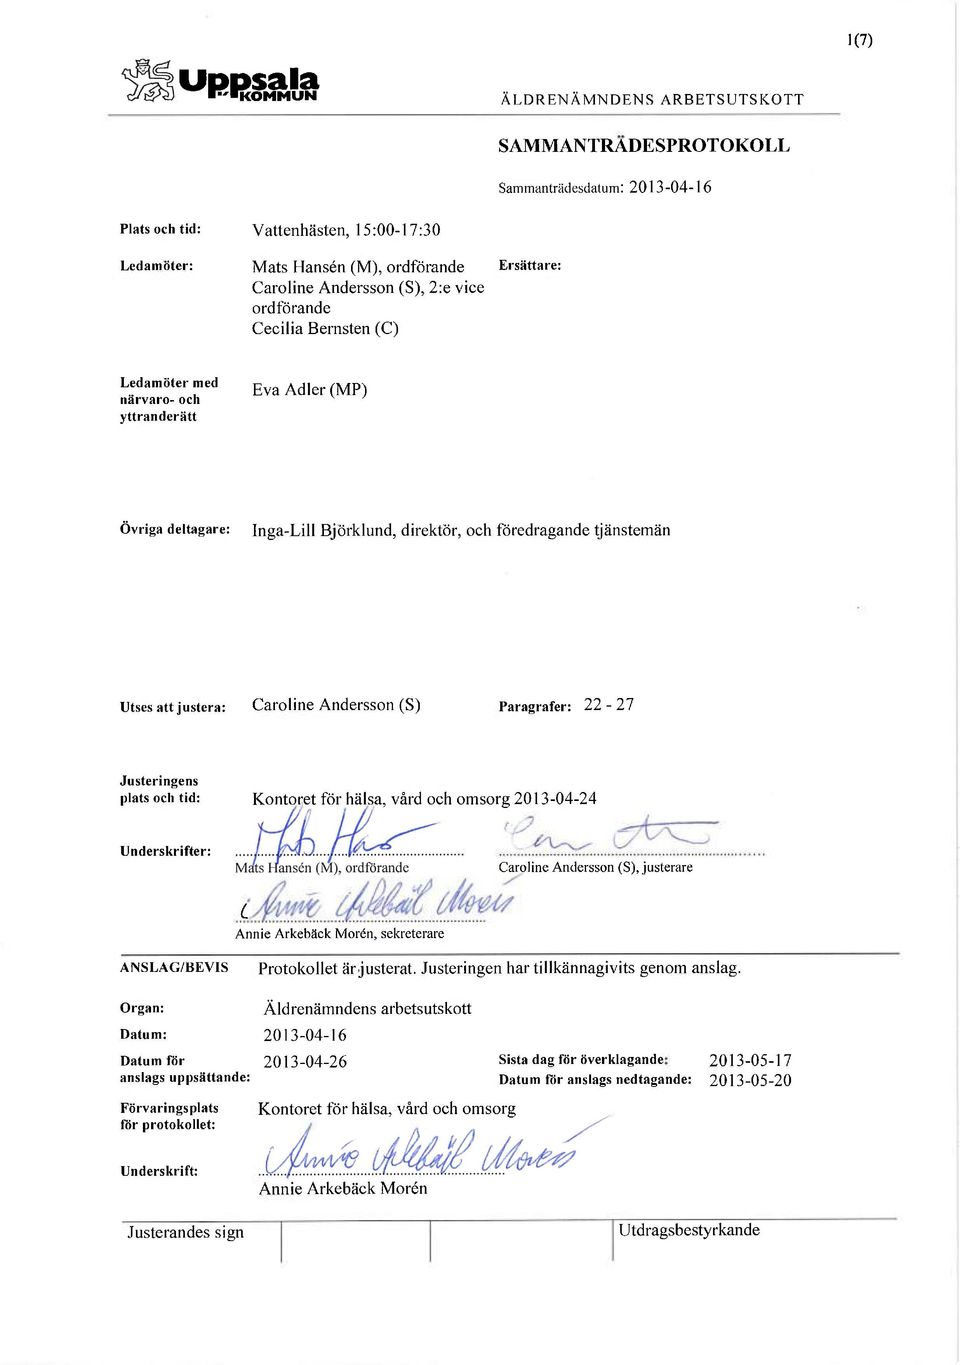 tid: Kontoret för hälsa, vård och omsorg 2013-04-24 Underskrifter: Caroline Andersson (S), justerare c Annie Arkebäck Morén, sekreterare ANSLAG/BEVIS Protokollet är justerat.